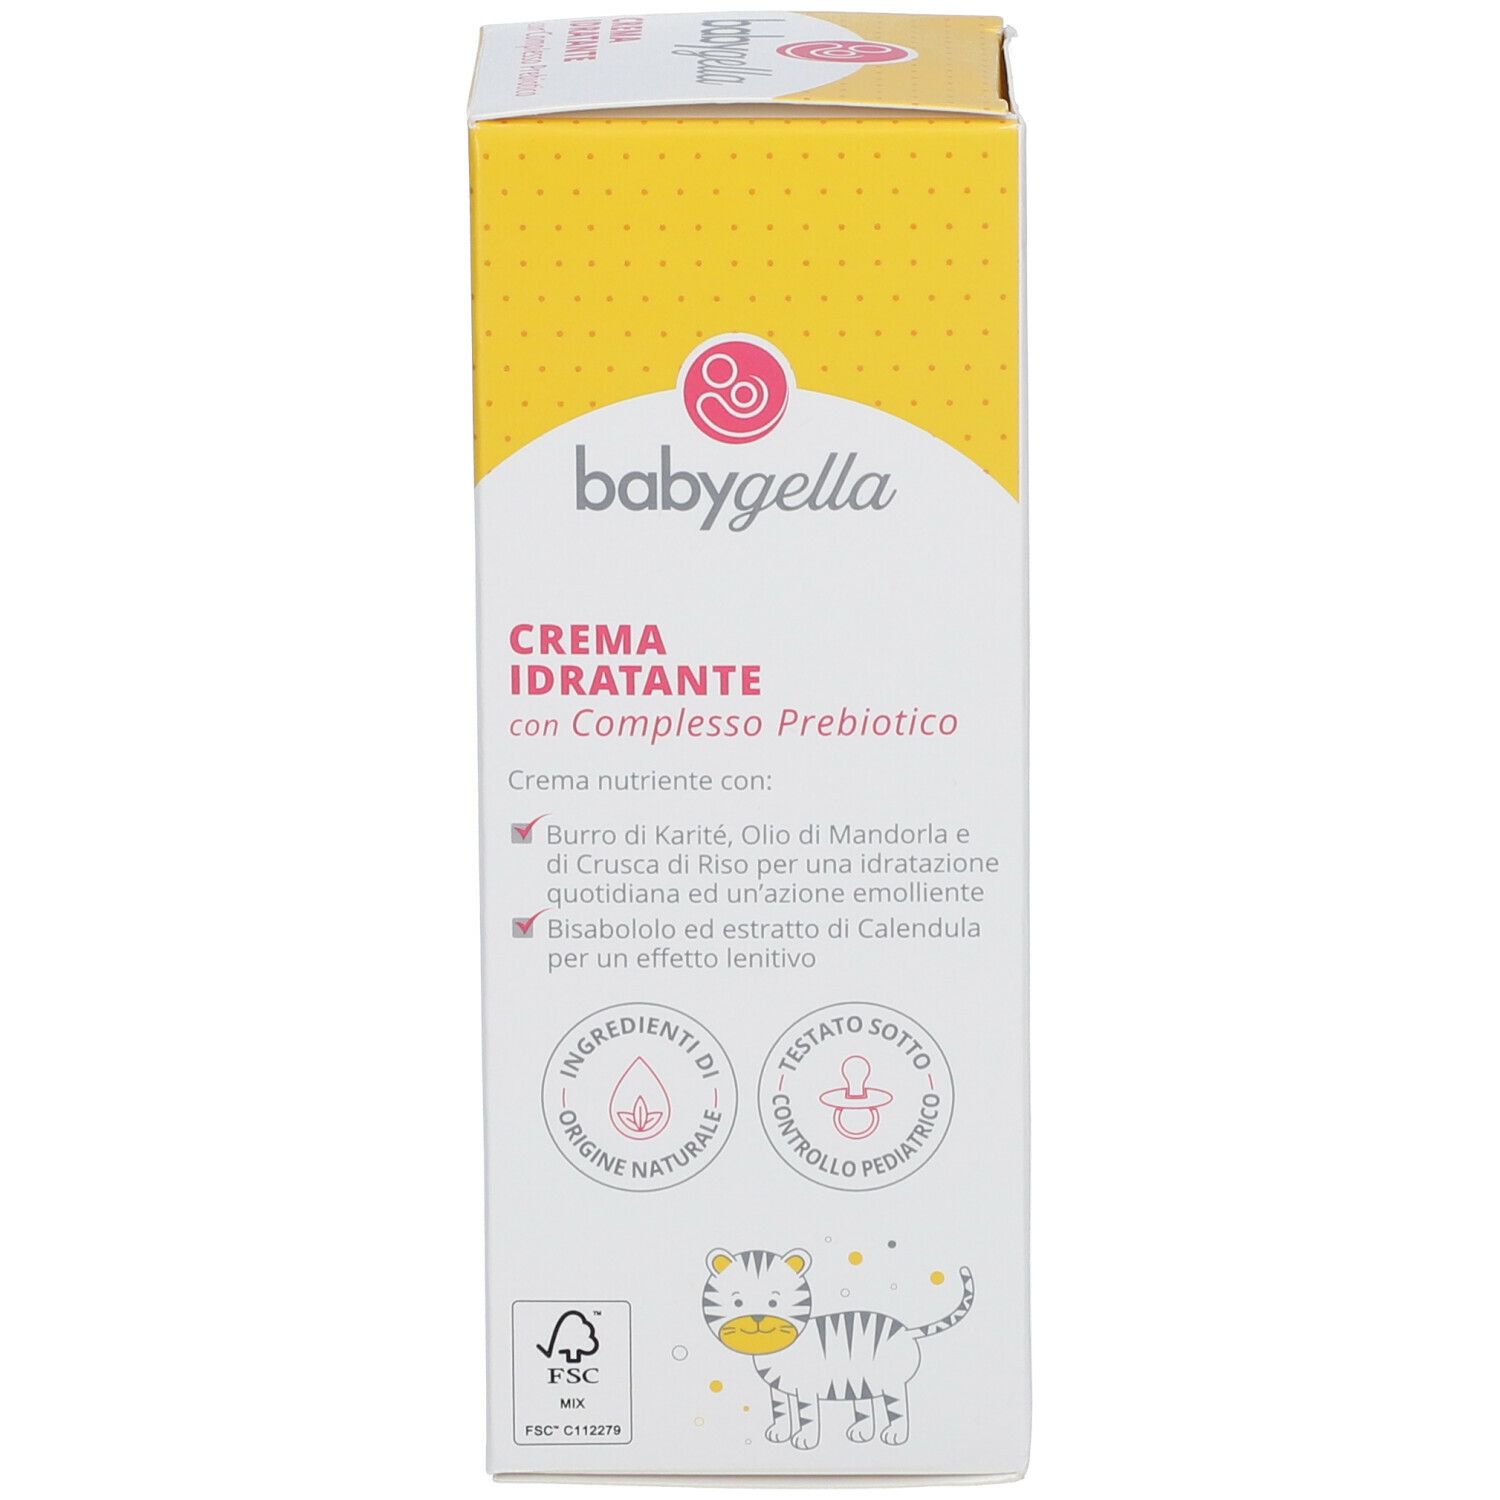 Babygella Crema Idratante con Complesso Prebiotico